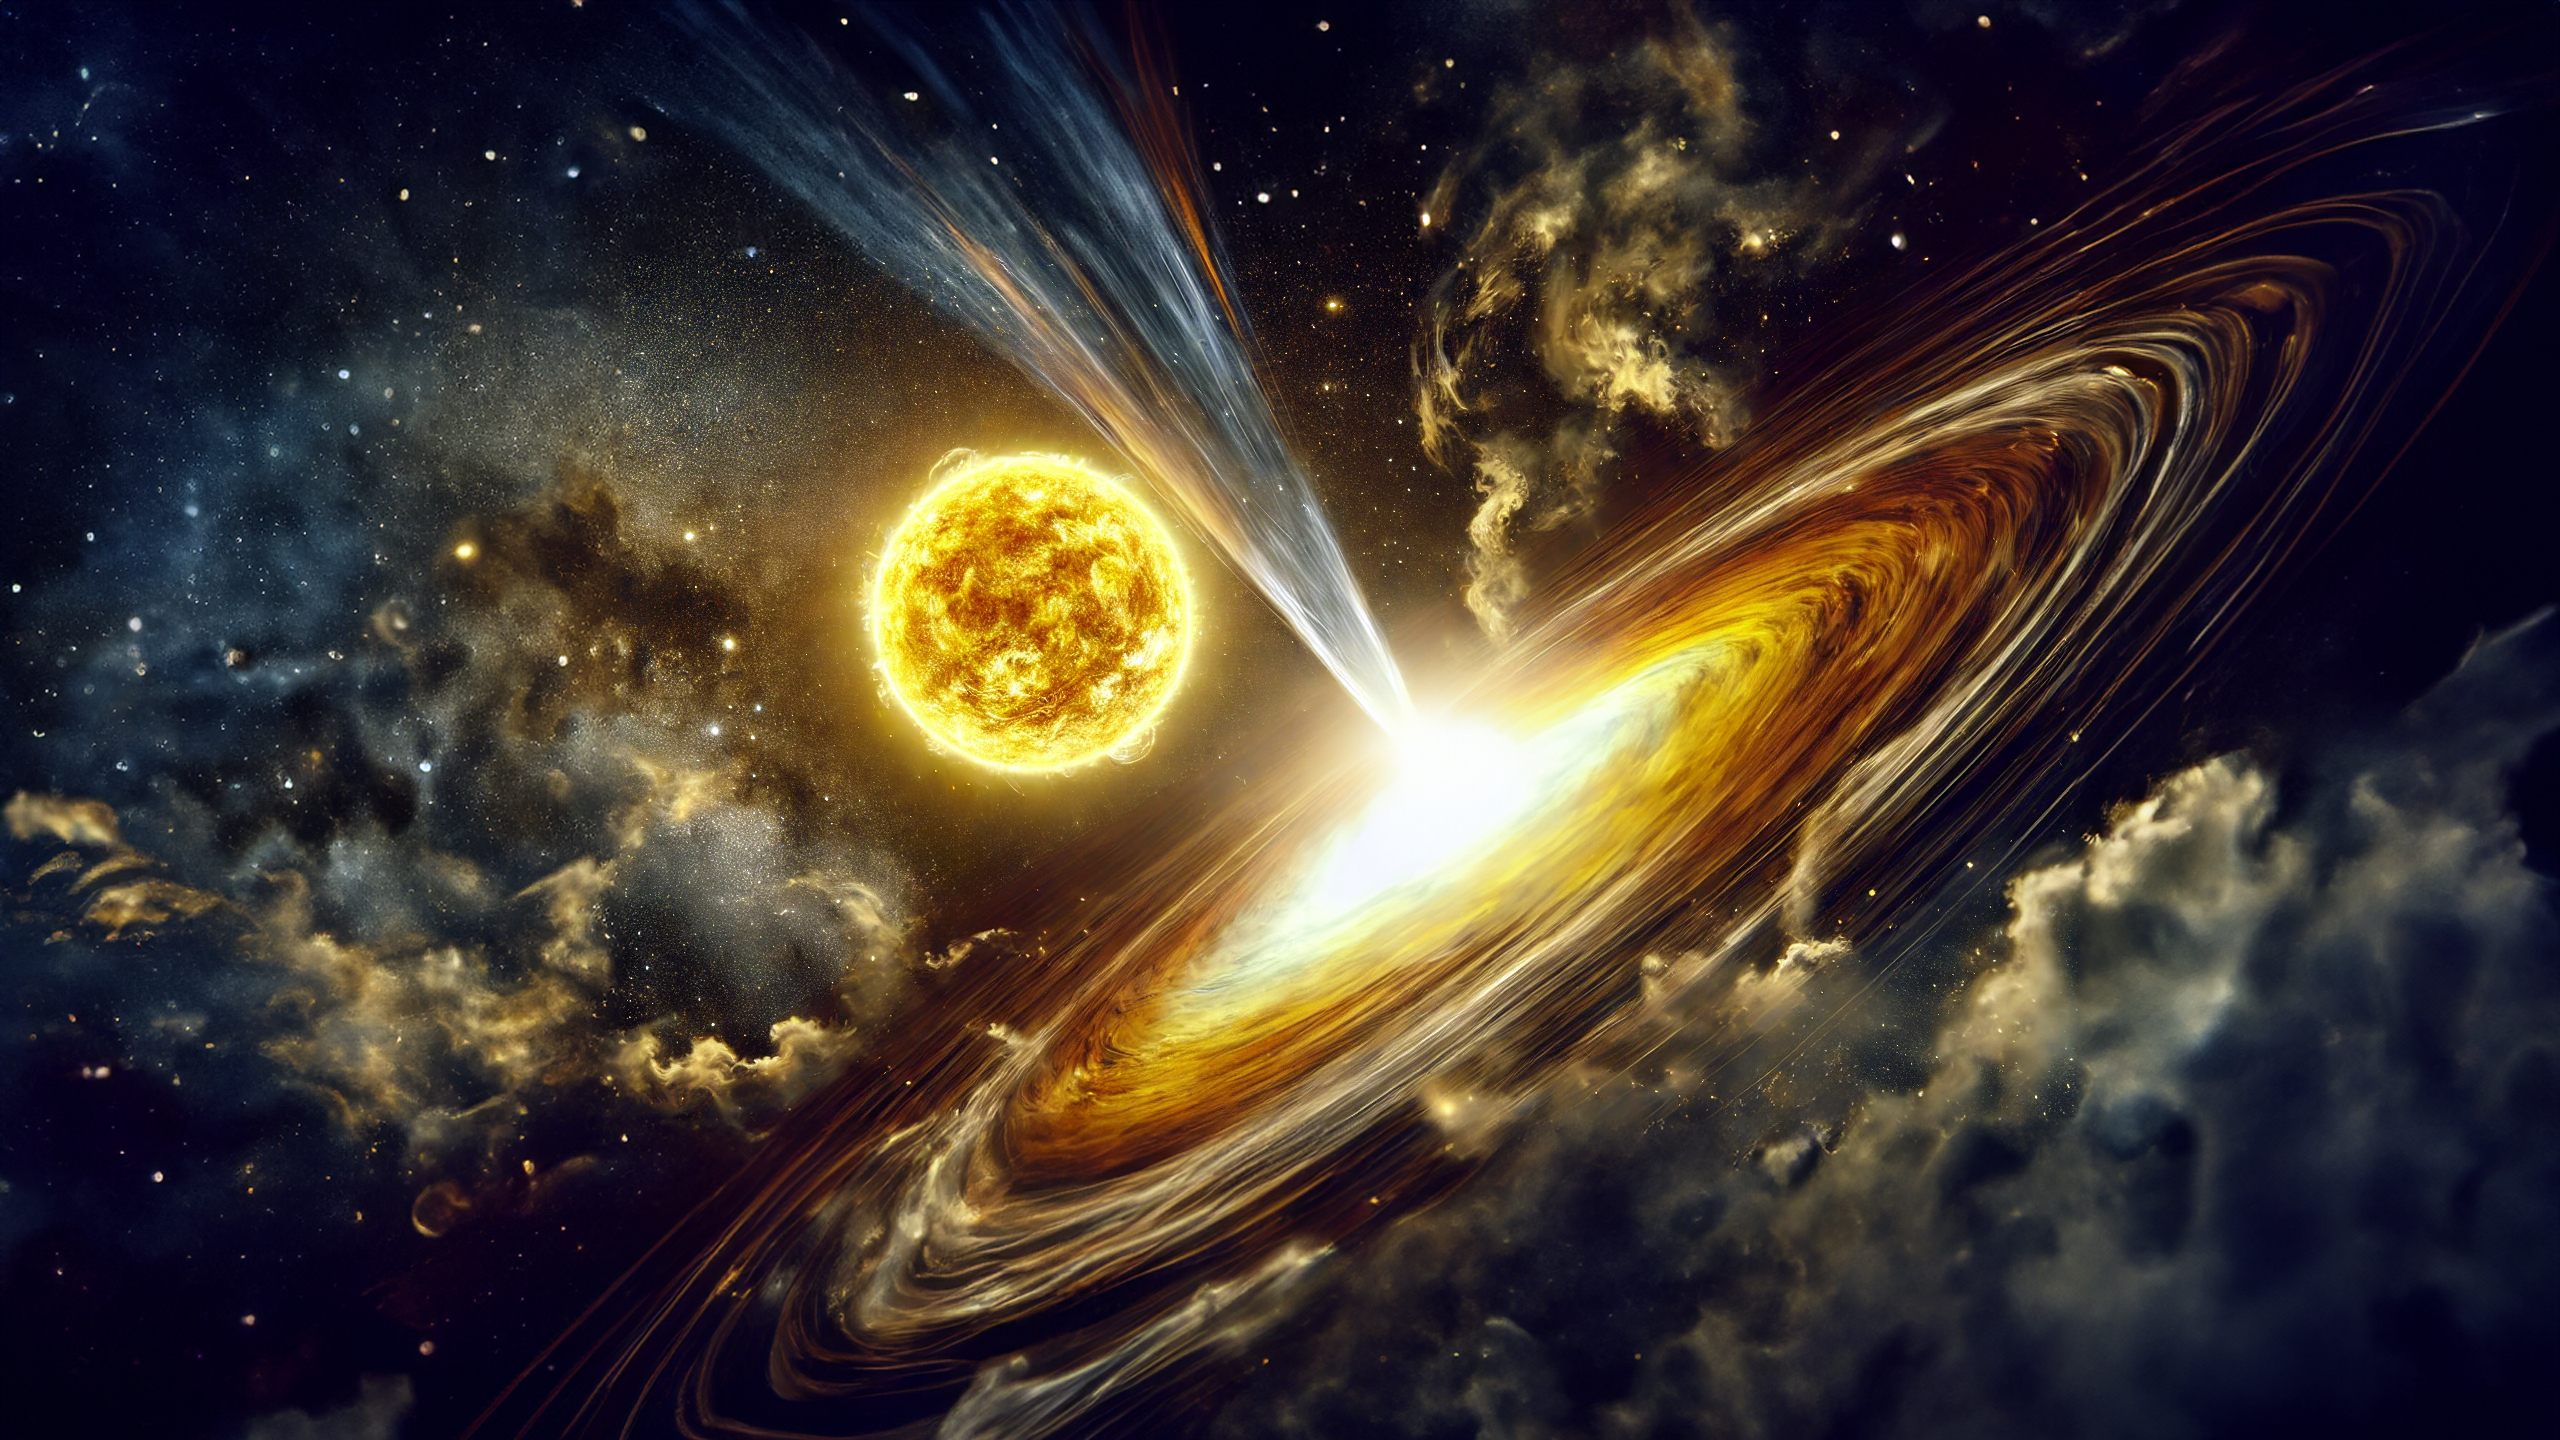 Space Nebula Universe Stars Sun Planet Black Holes Ai Art 2560x1440